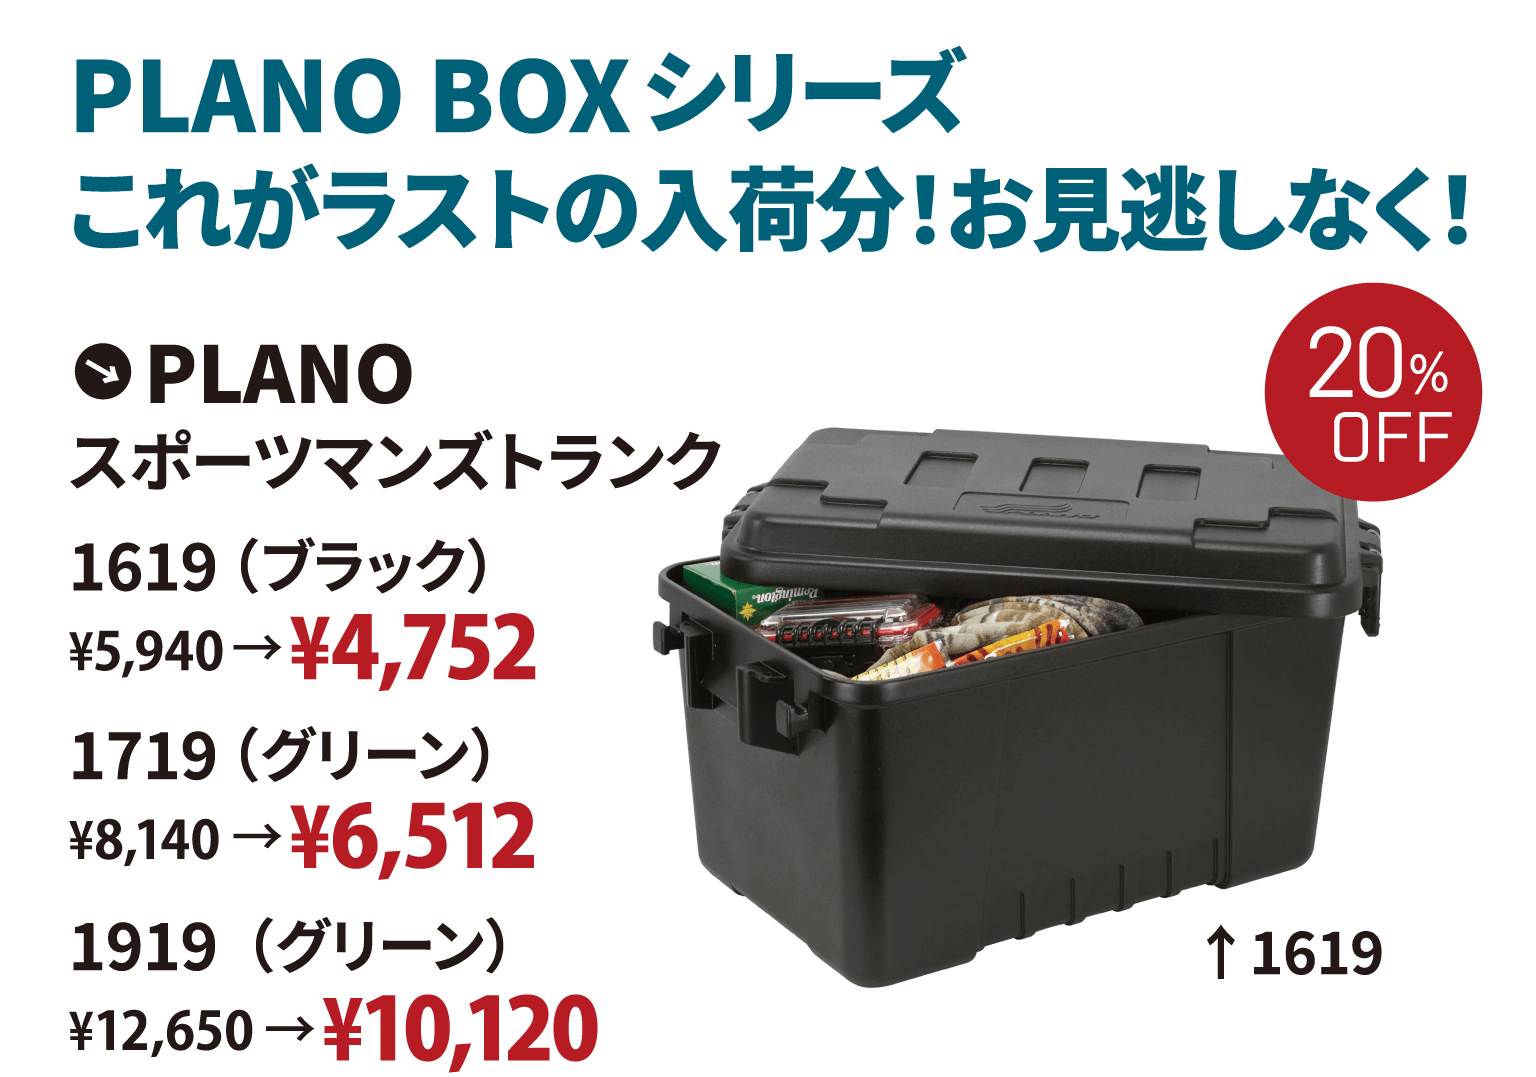 PLANO BOXシリーズこれがラストの入荷分！お見逃しなく！PLANO スポーツマンズトランク 1619